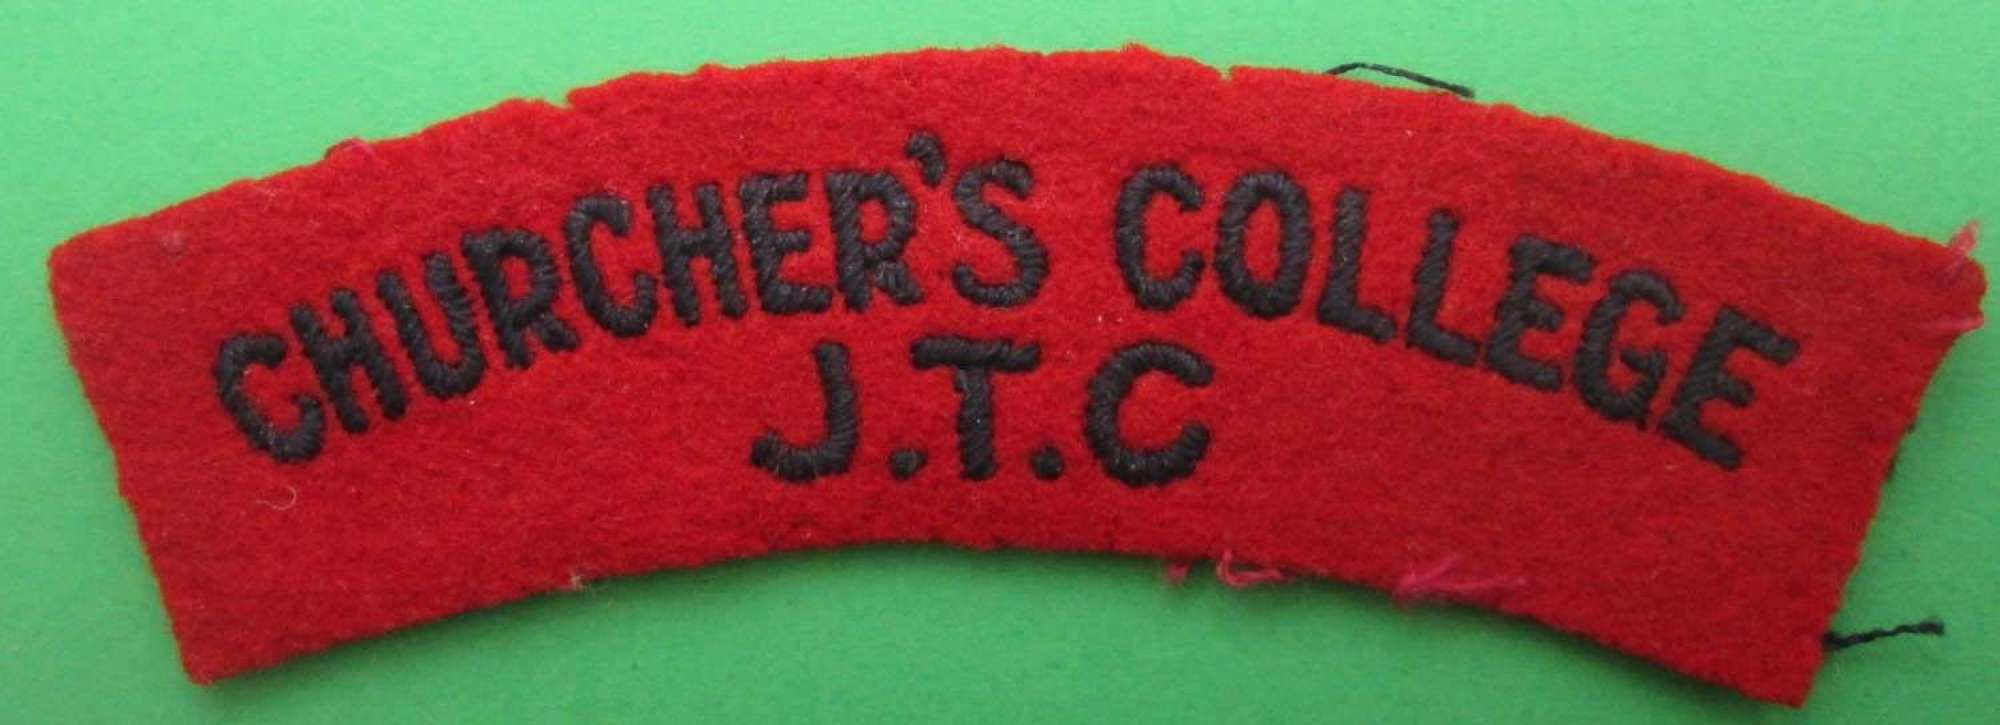 CHURCHER'S COLLEGE J.T.C SHOULDER TITLE